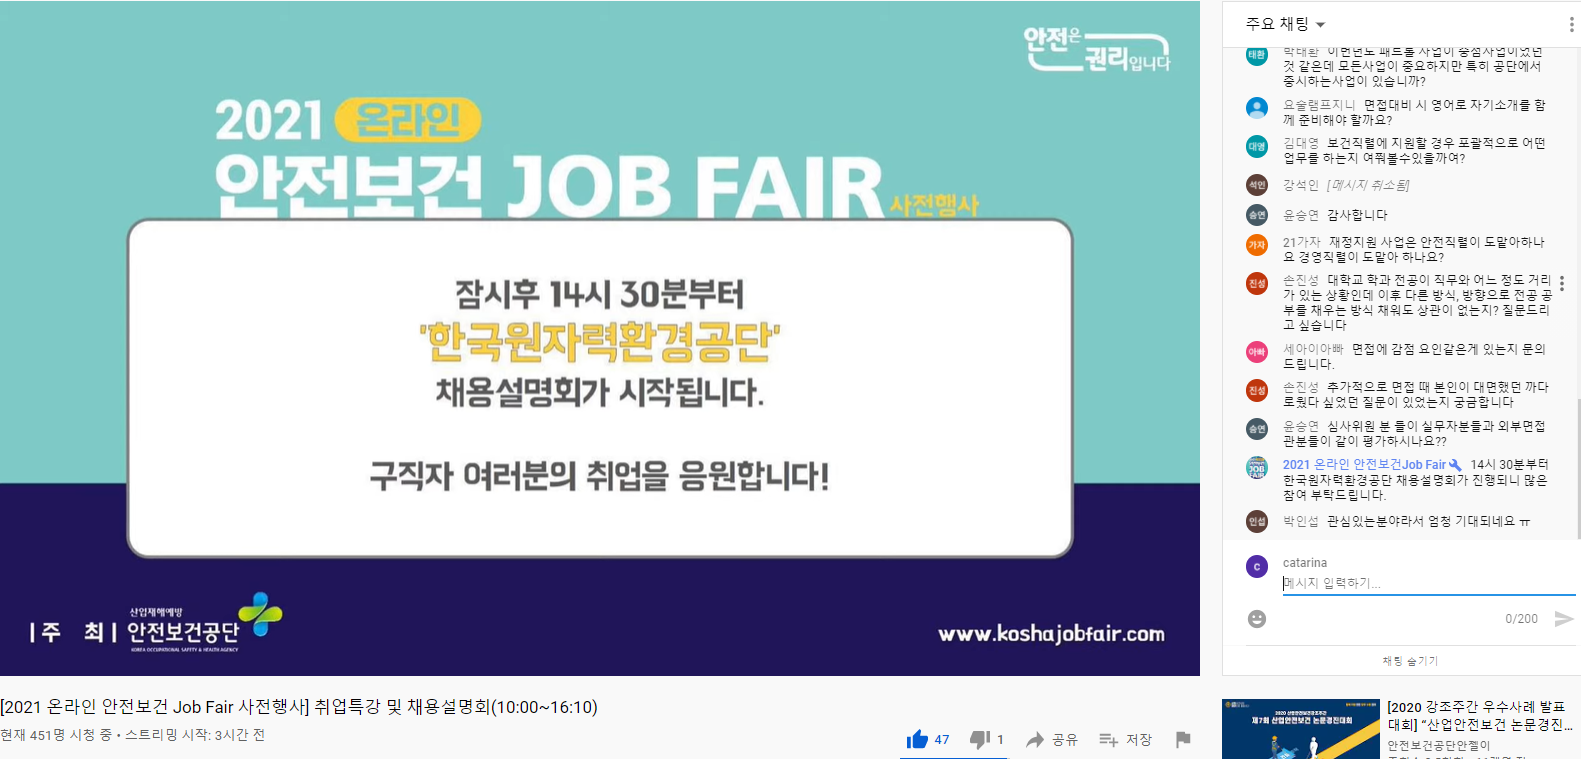 2021 안전보건 Job Fair(5)